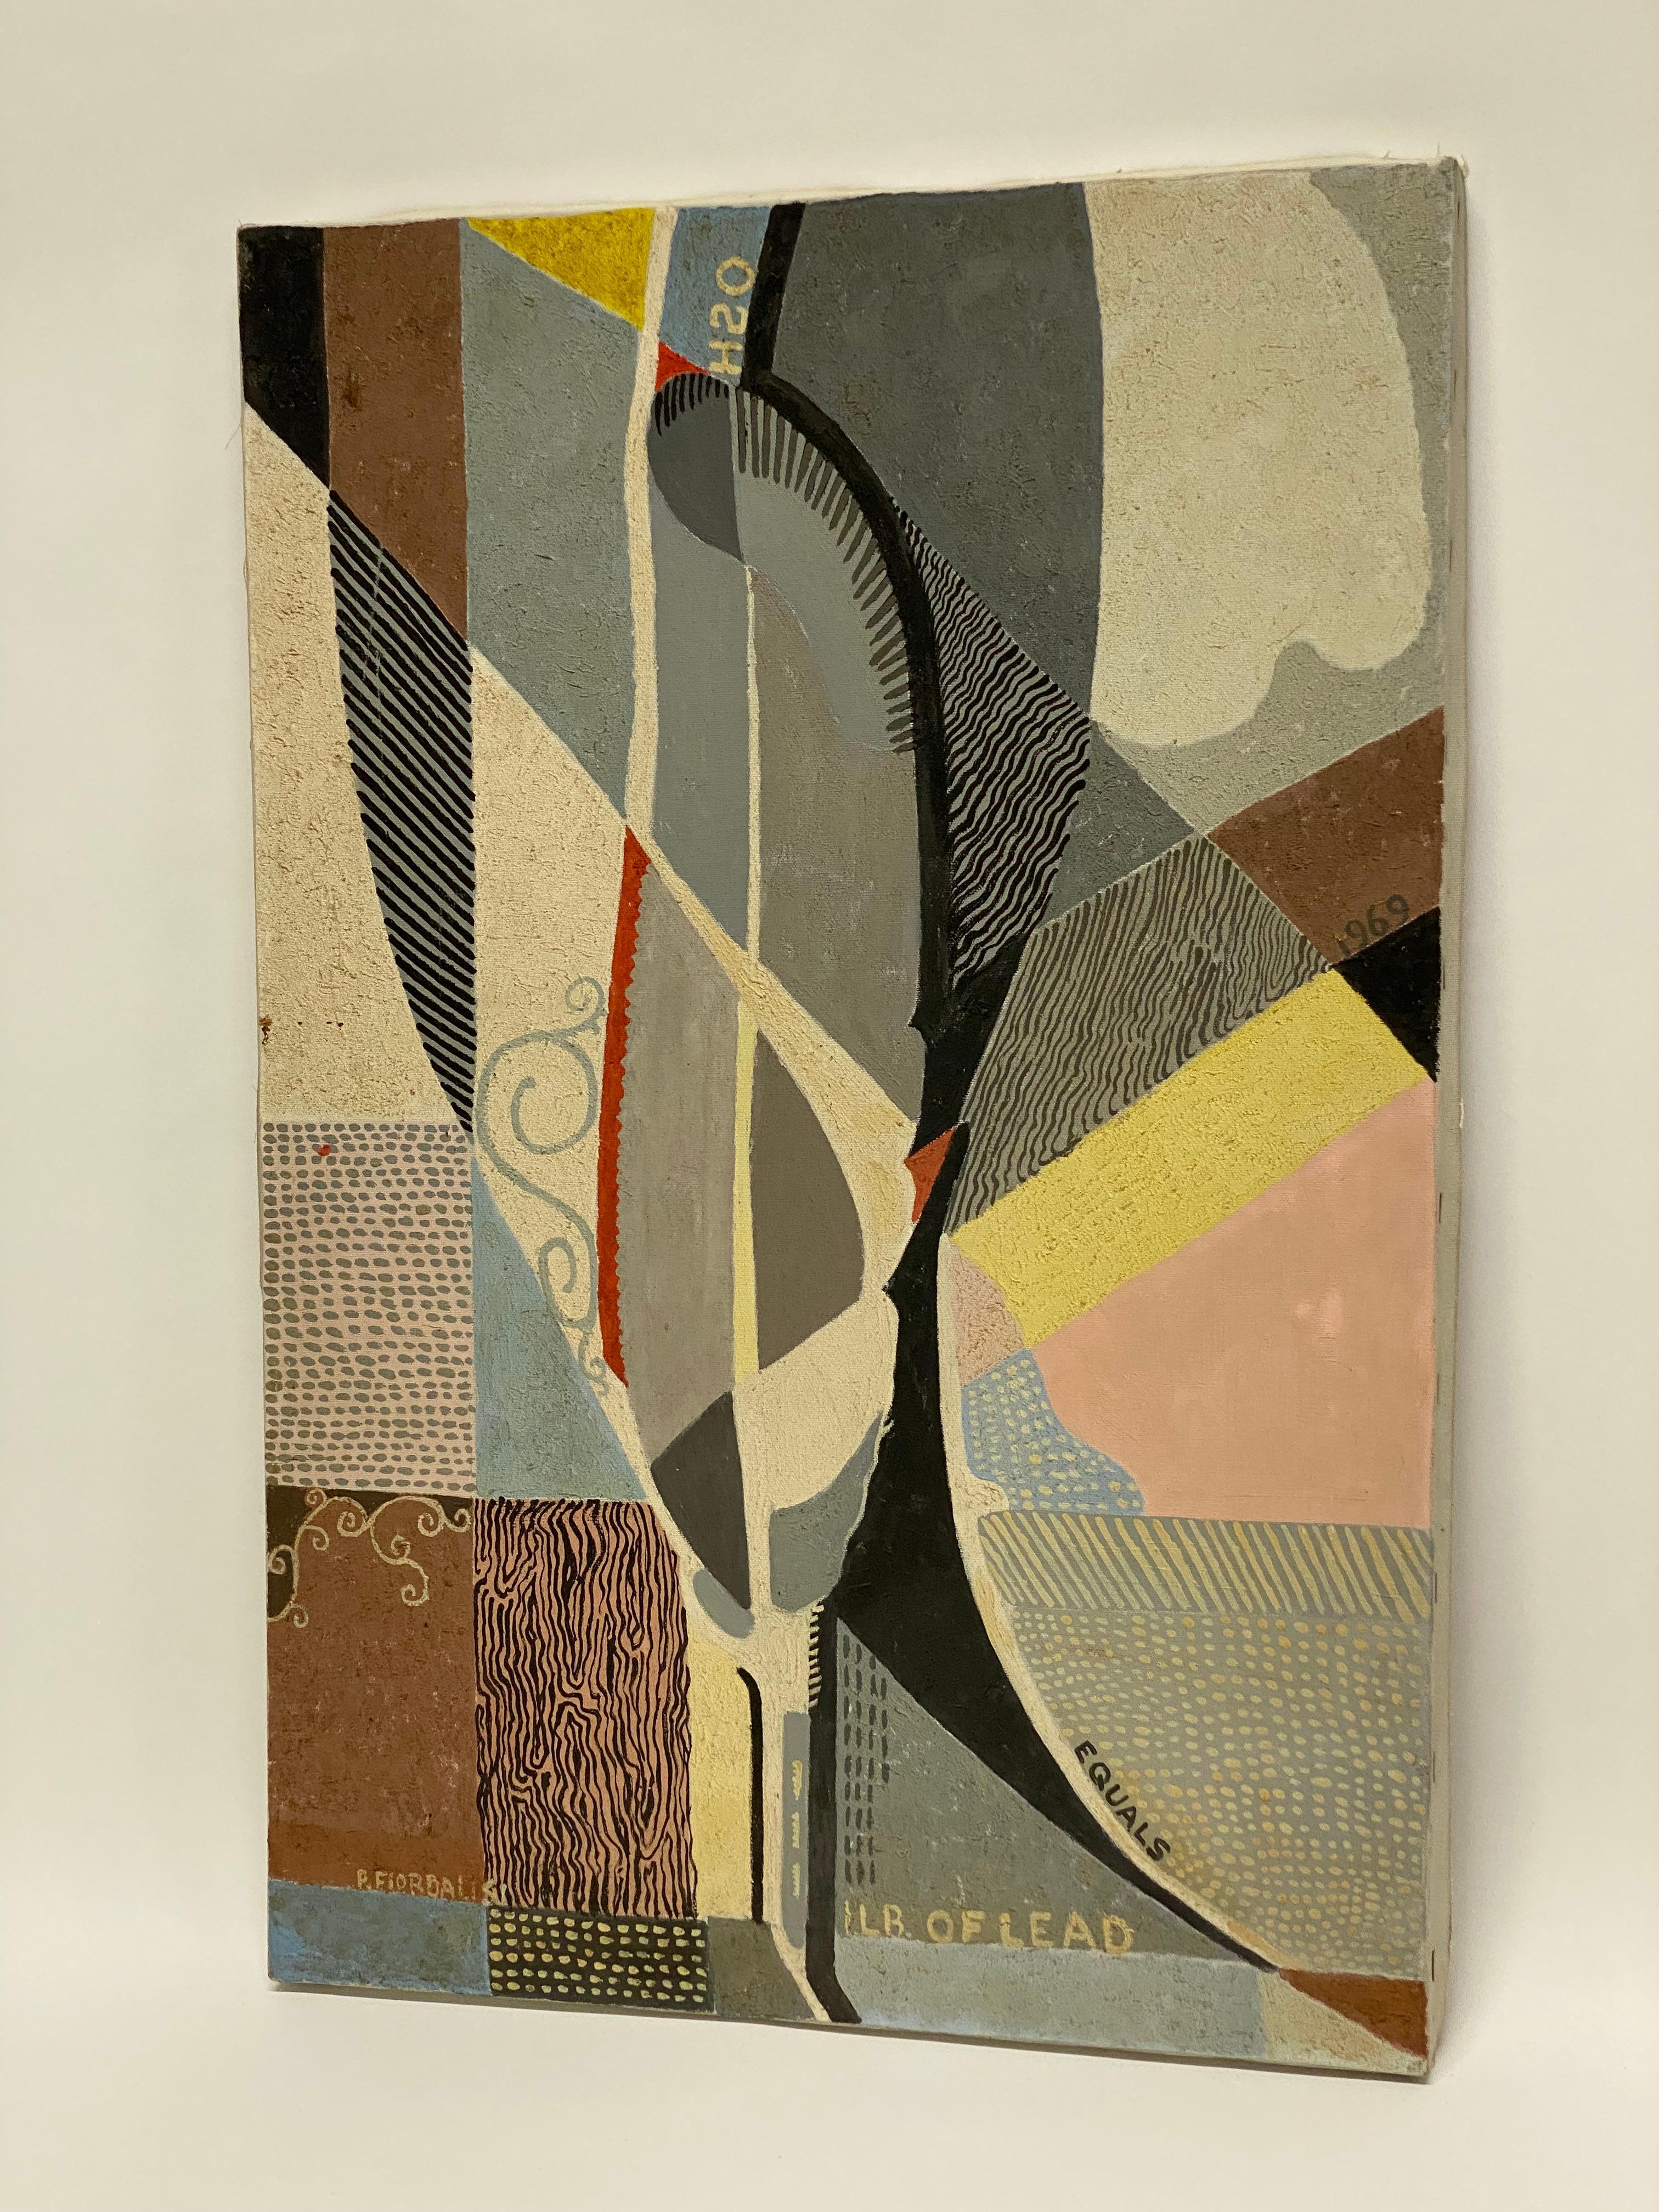 Signiert unten links P. Fiordalisi (1904-?). Peter Fiordalisi wurde in Union City, NJ, geboren und schuf dieses feine abstrakte Ölgemälde auf Leinwand um 1969. Die Künstlerin verwendet auf dieser fein gearbeiteten Leinwand segmentierte Farben,